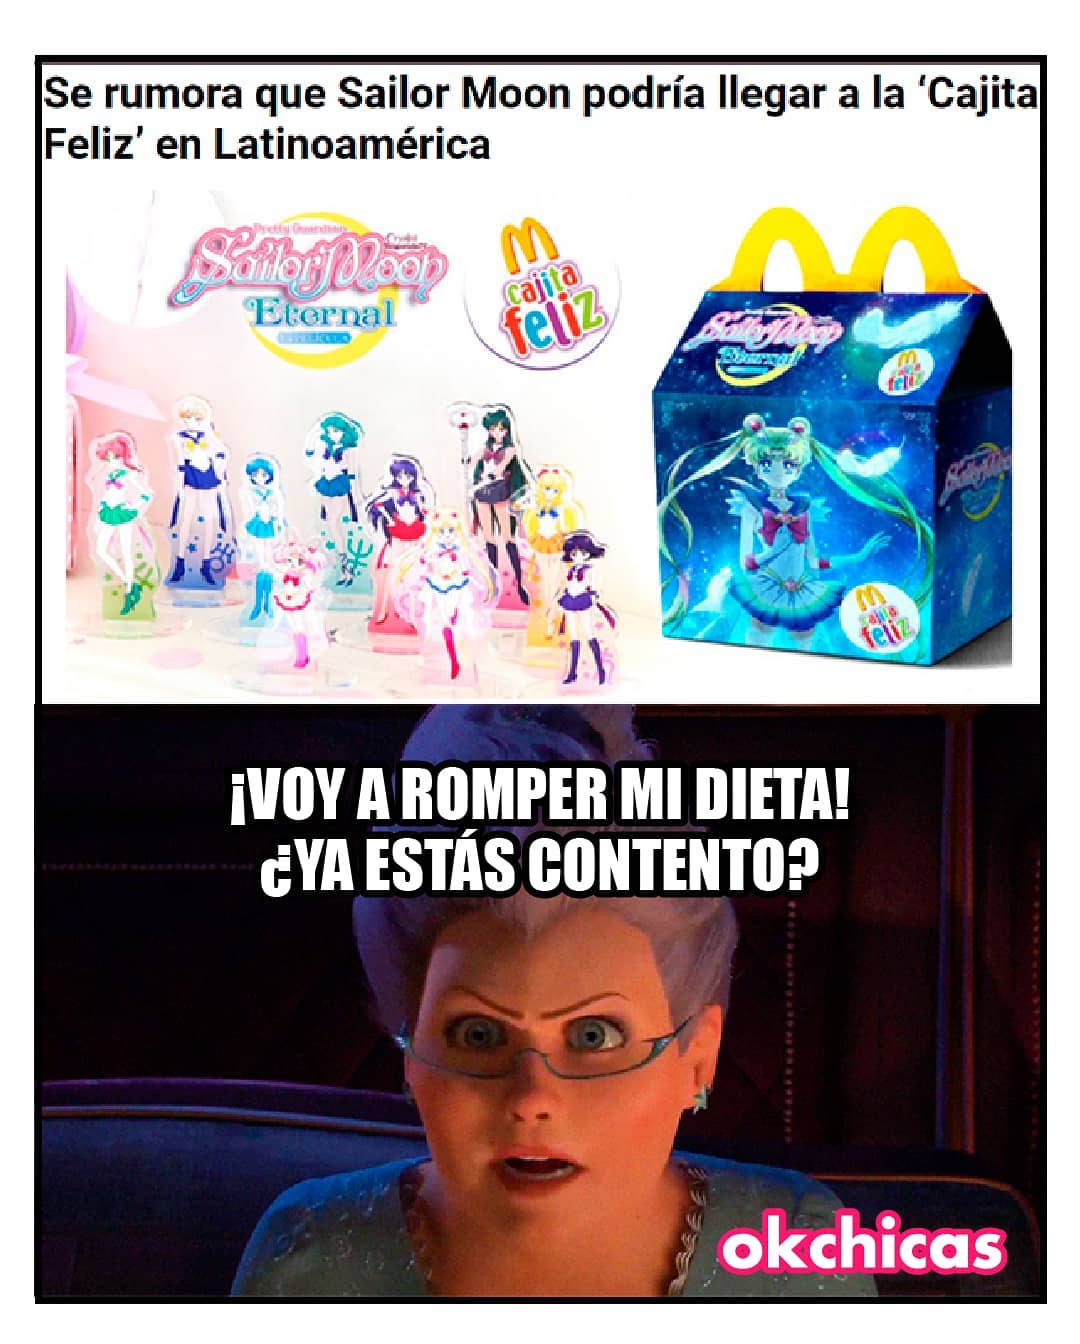 Se rumora que Sailor Moon podría llegar a la 'Cajita Feliz' en Latinoamérica. ¡Voy a romper mi dieta! ¿Ya estás contento?